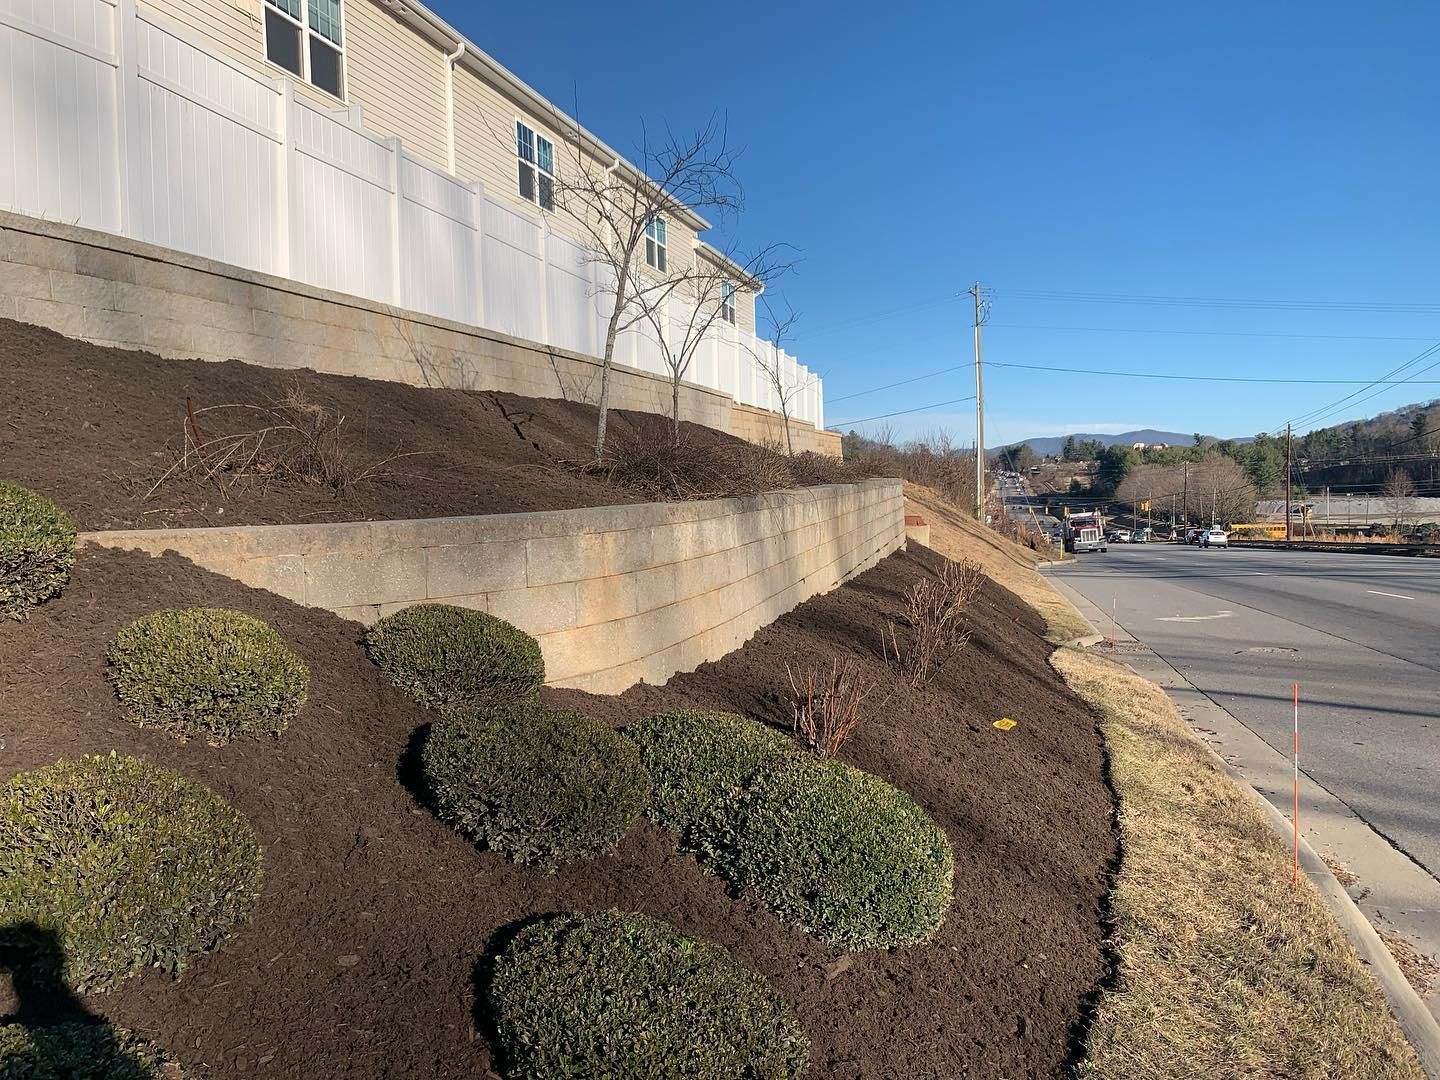 Landscaping for HG Landscape Plus in Asheville, NC